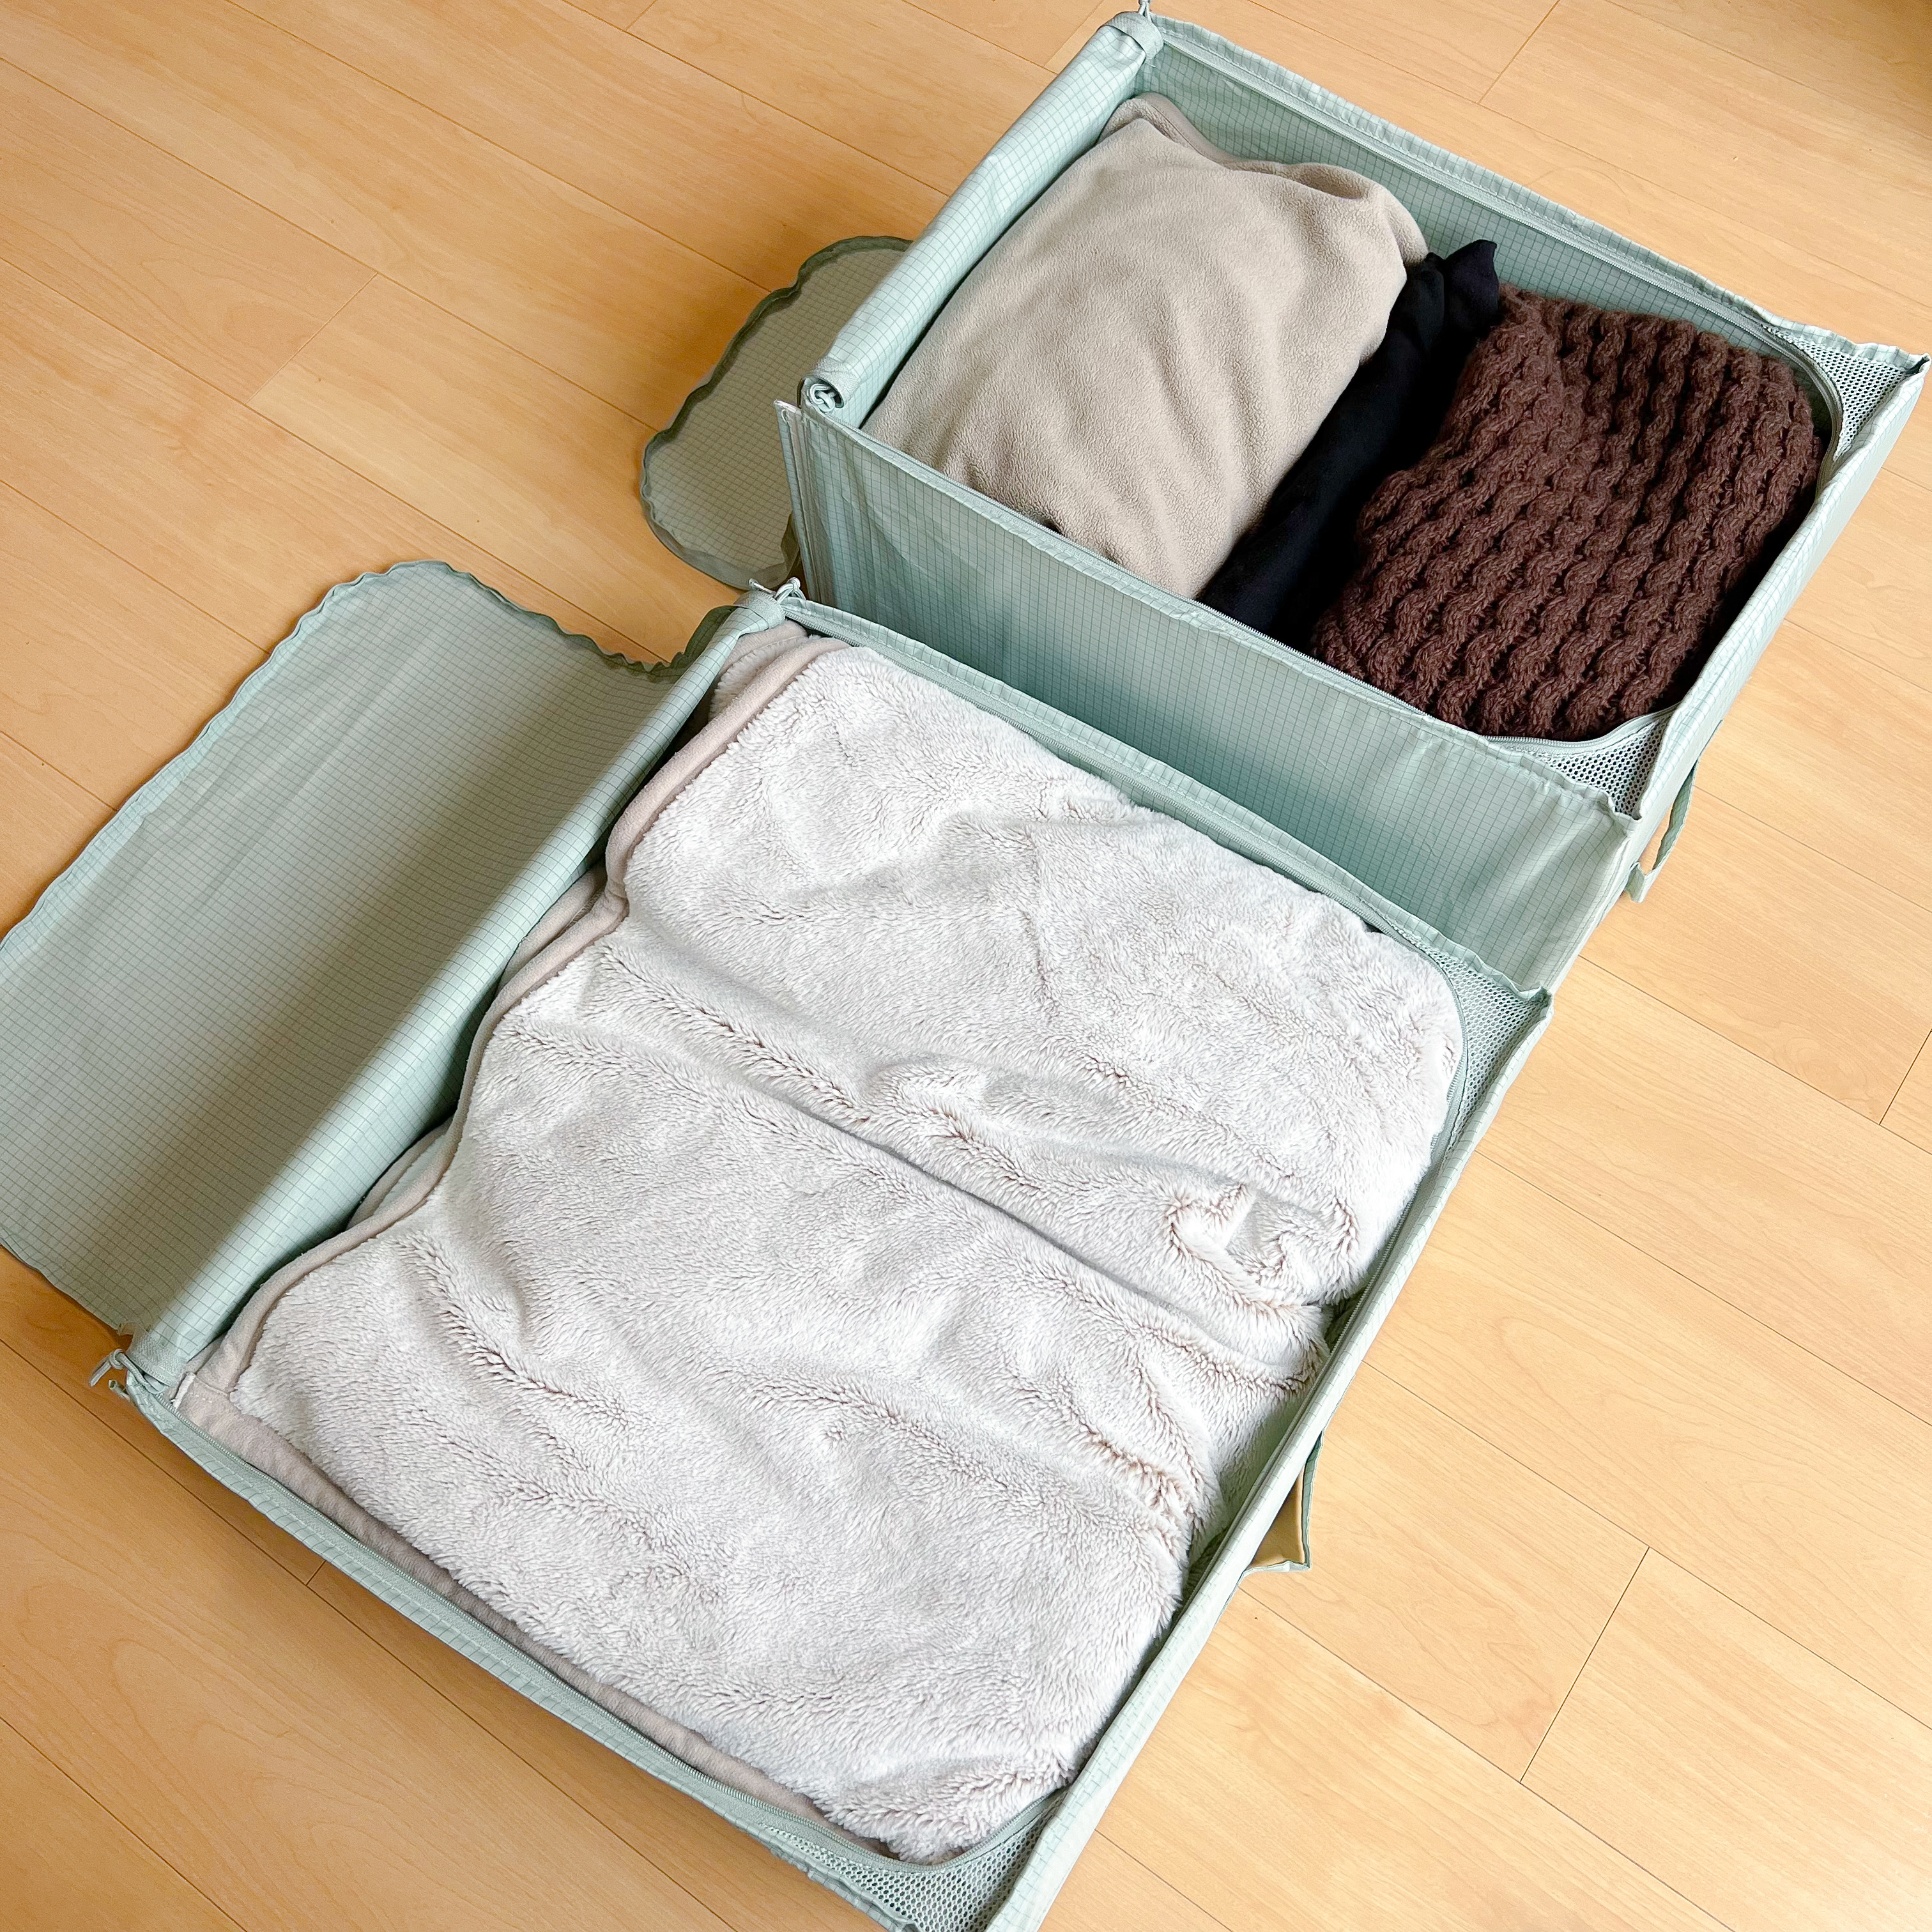 スーツケースに服とタオルが畳まれている。